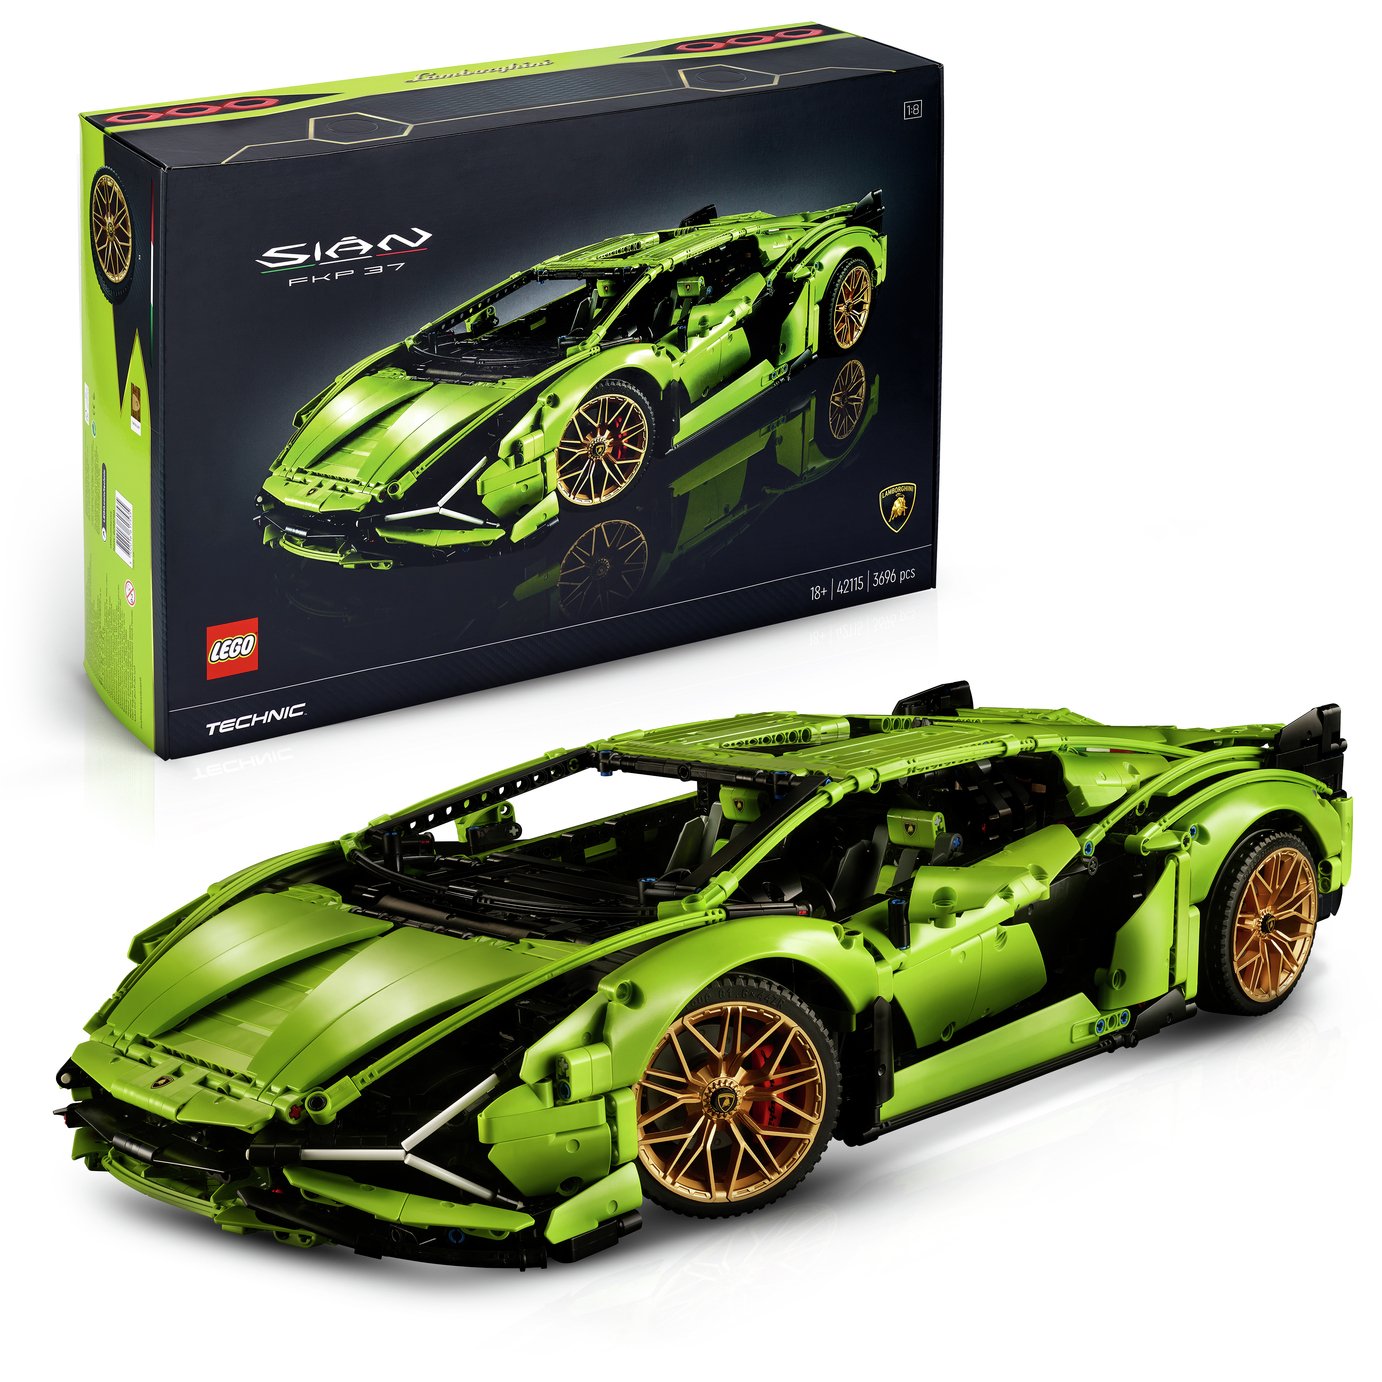 LEGO Technic Lamborghini Sián FKP 37 Car Model Set 42115 review